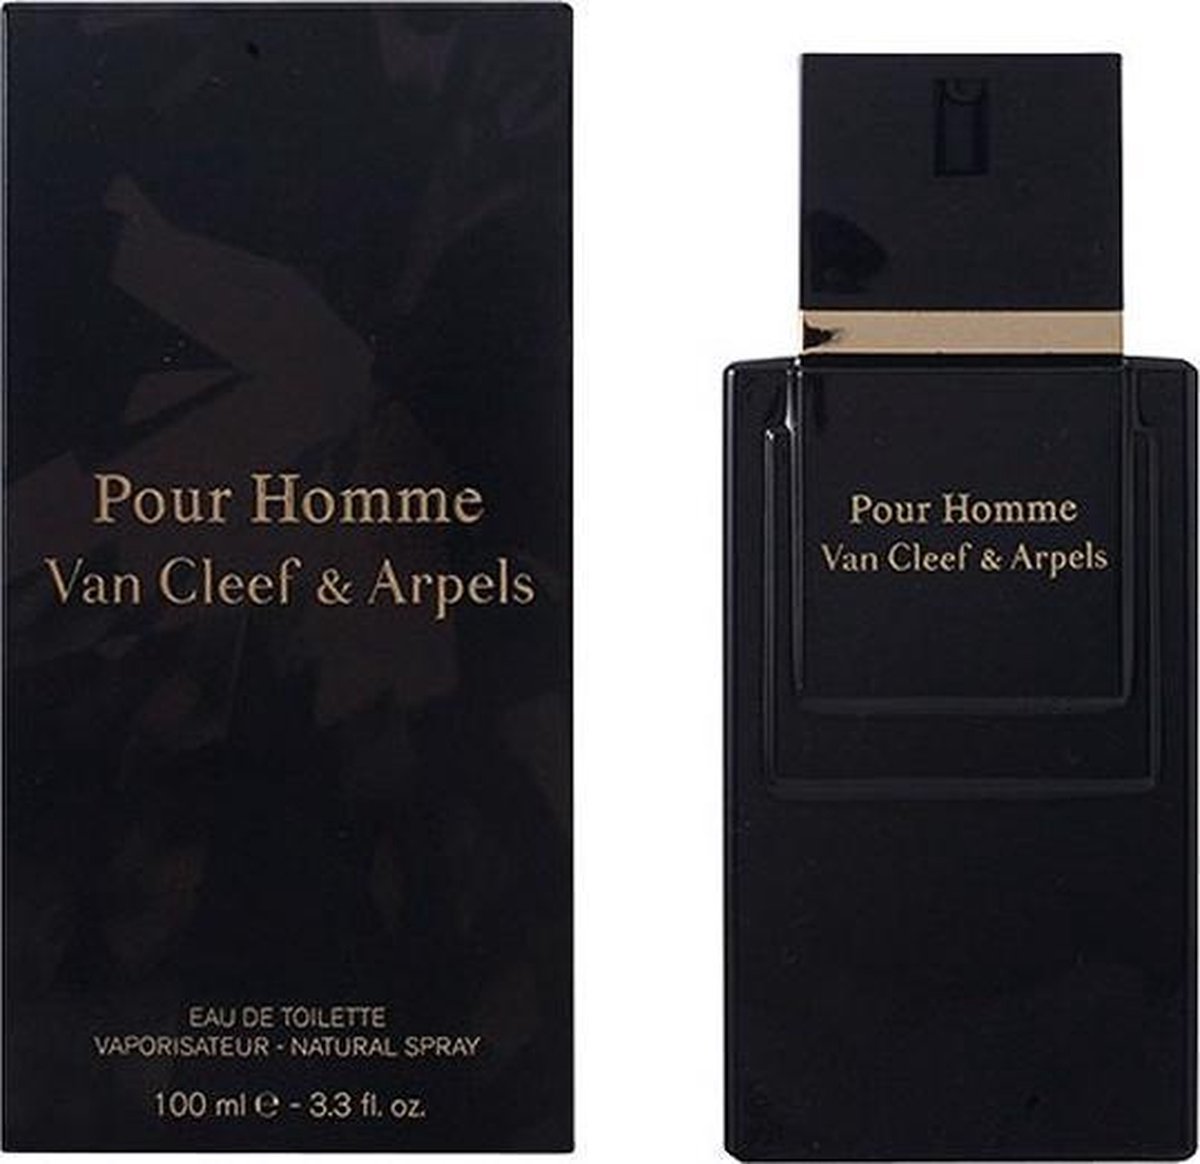 Van Cleef Homme 100 ml - de toilette - Herenparfum | bol.com